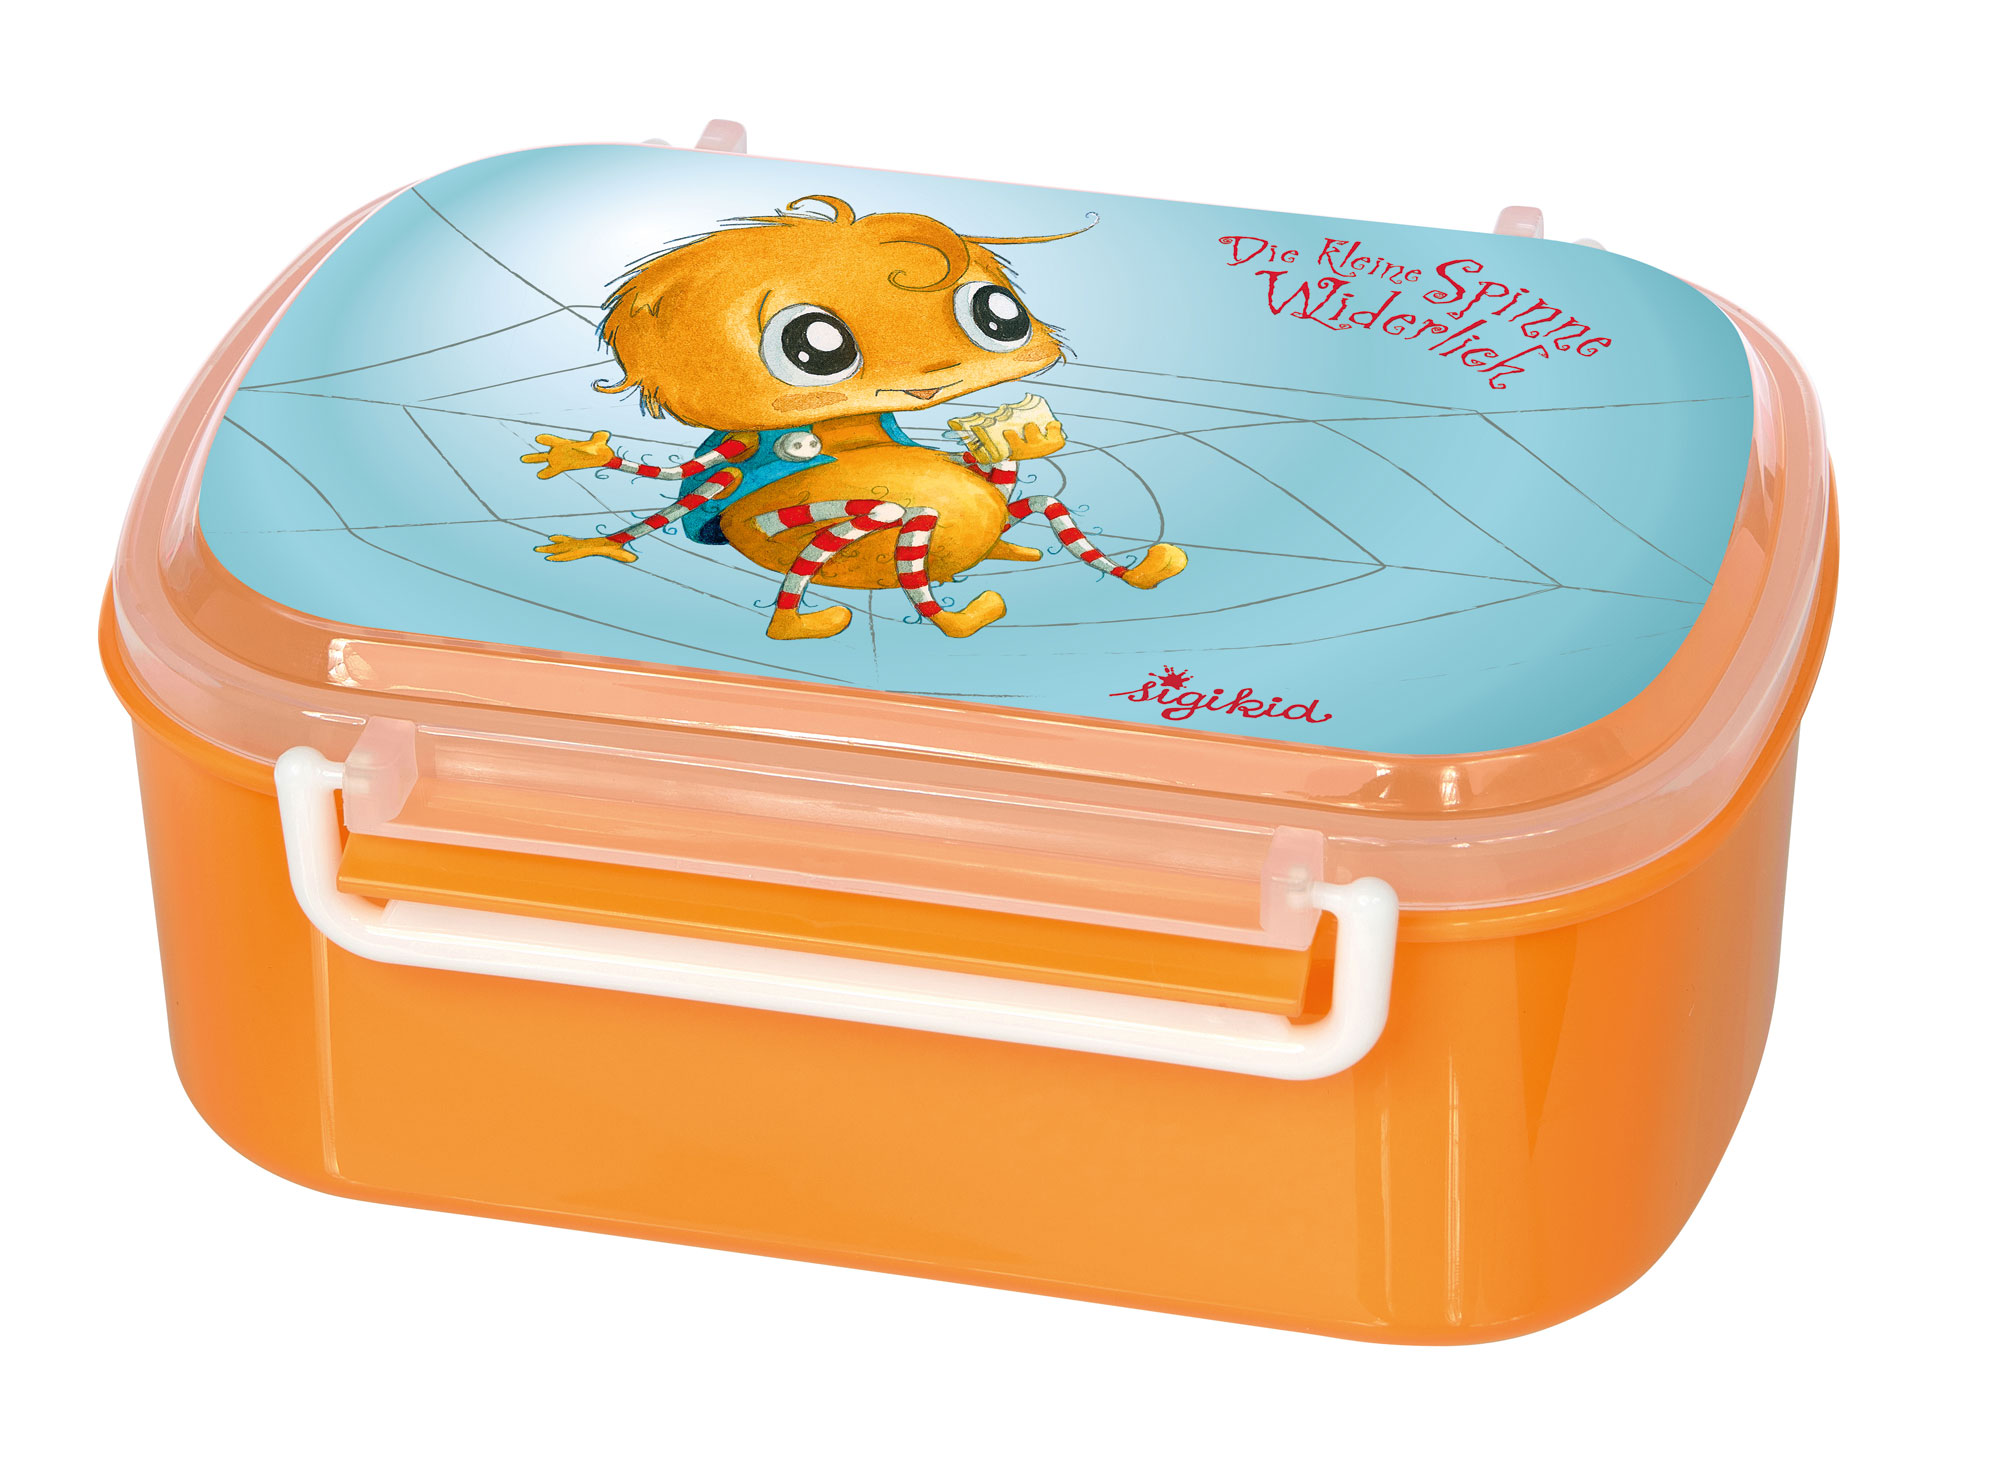 Children's lunchbox little spider, children's book "Die kleine Spinne Widerlich"